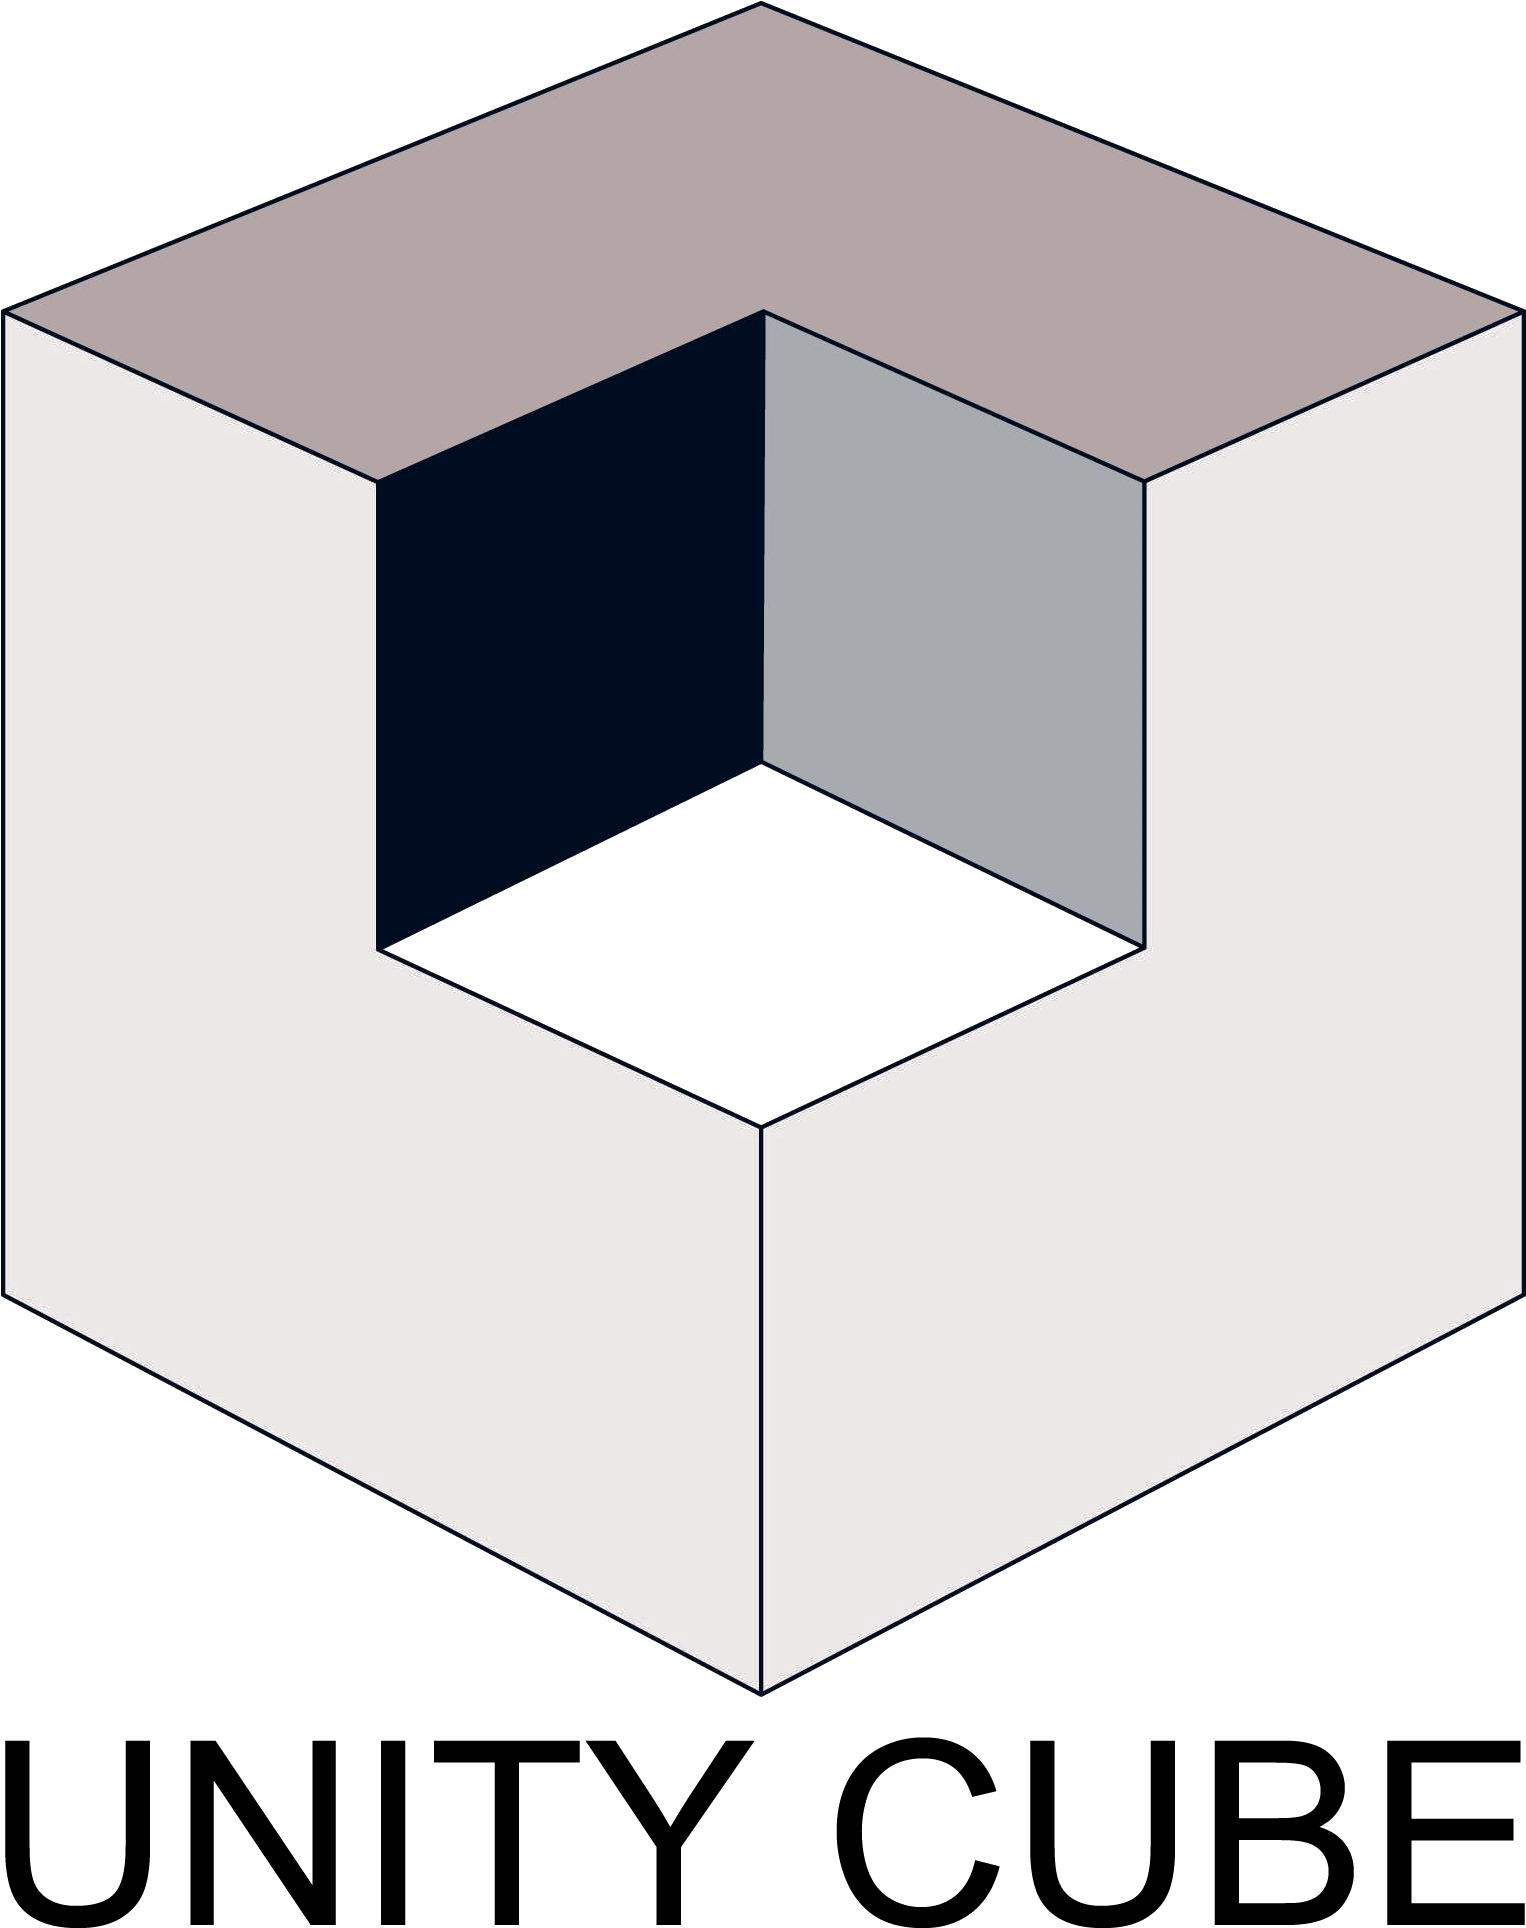 Cube com. Юнити куб. Кубик Unity. Куб из Юнити. Анимированный куб Unity.